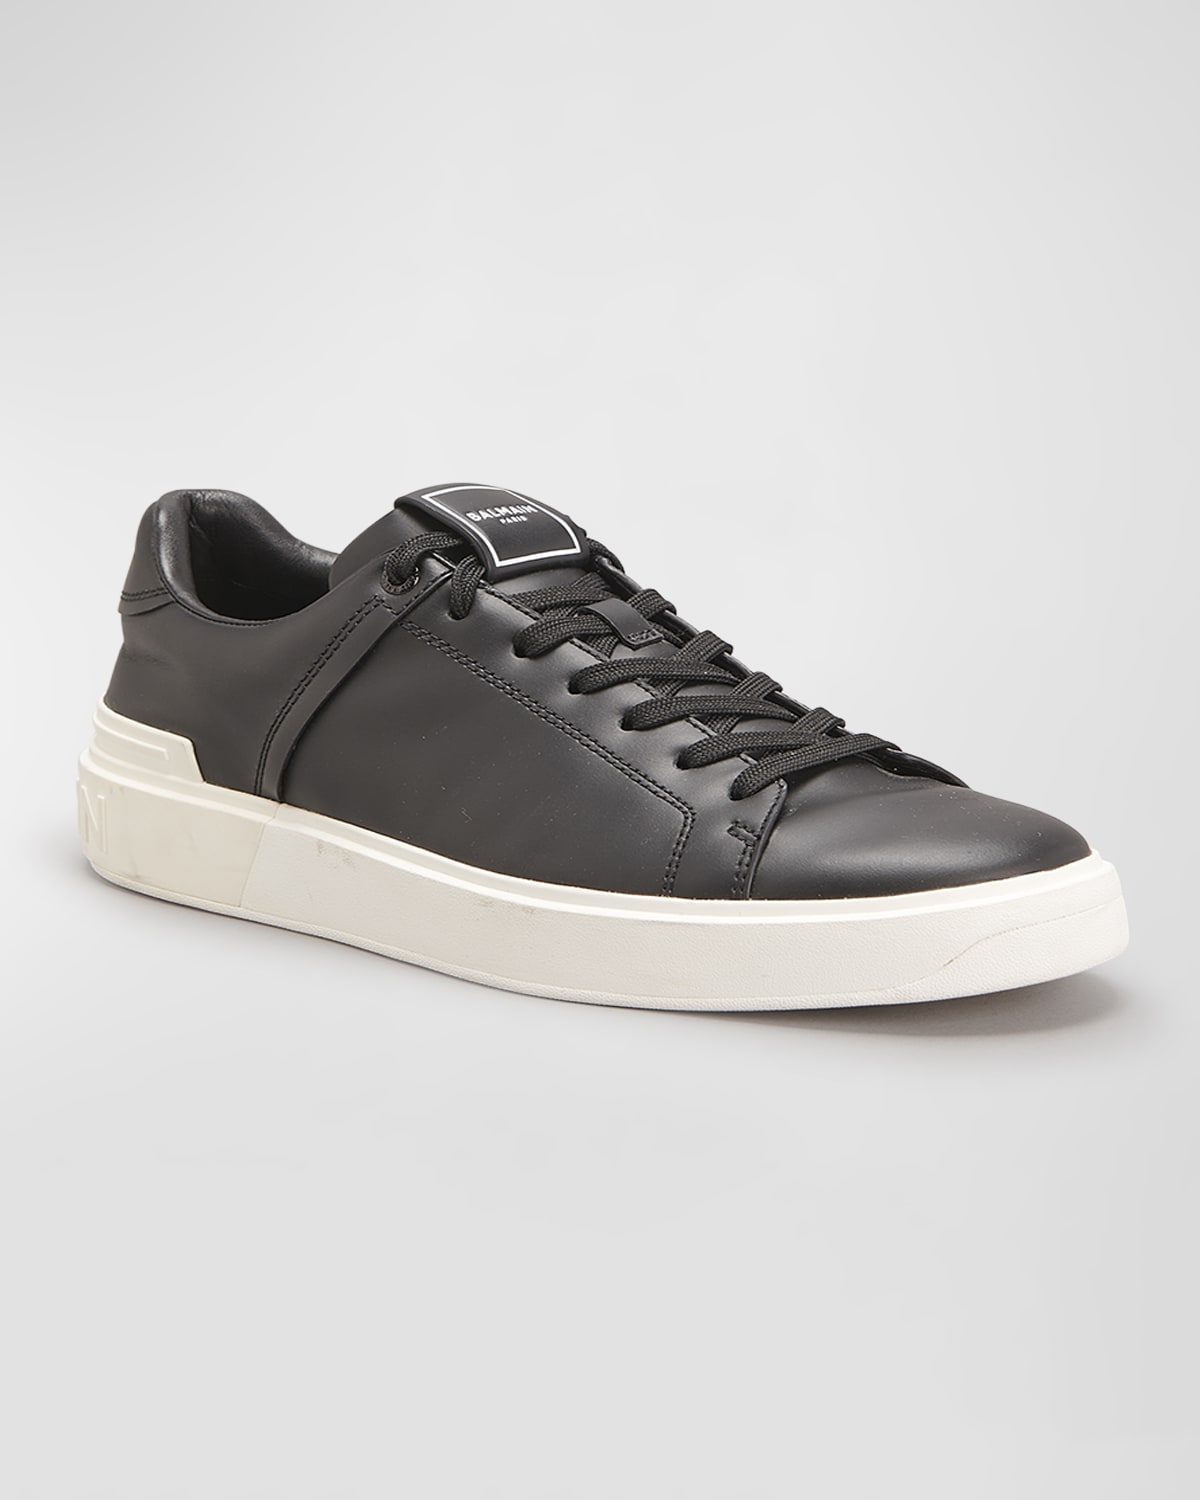 Balmain Men's B Court Leather Low-Top Sneakers | Neiman Marcus